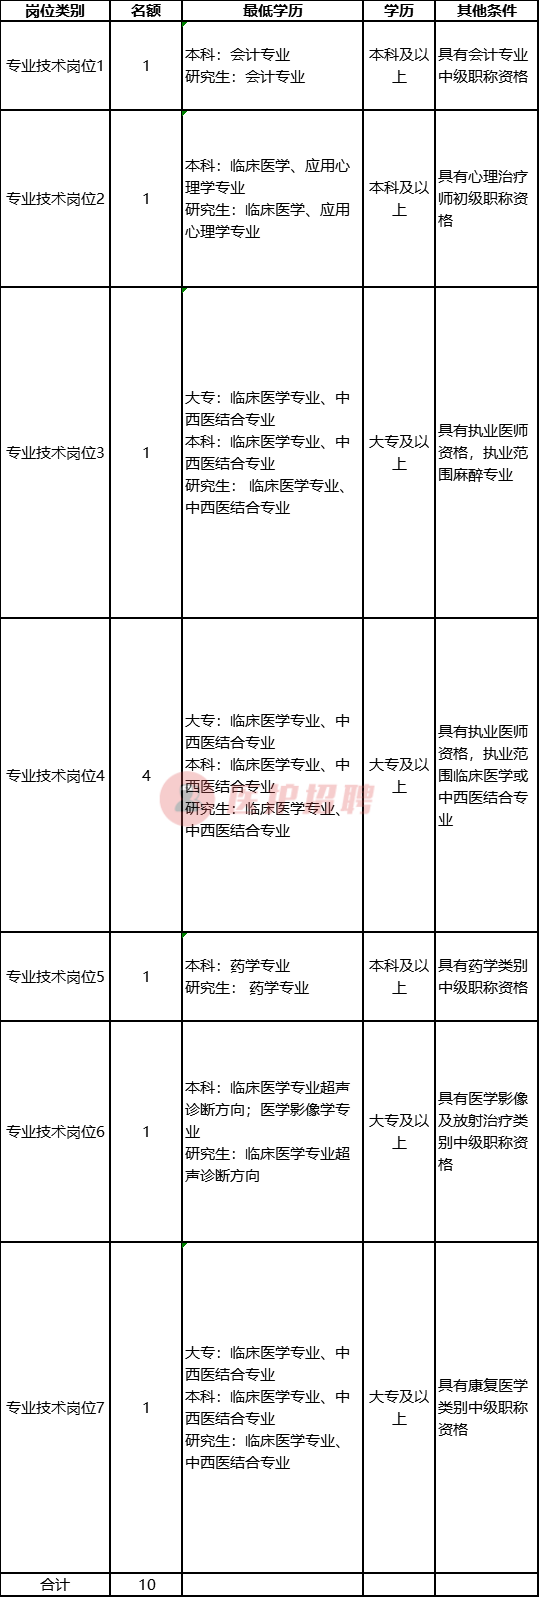 「四川」 德阳市精神卫生中心，2020年公开考核招聘专业技术人员